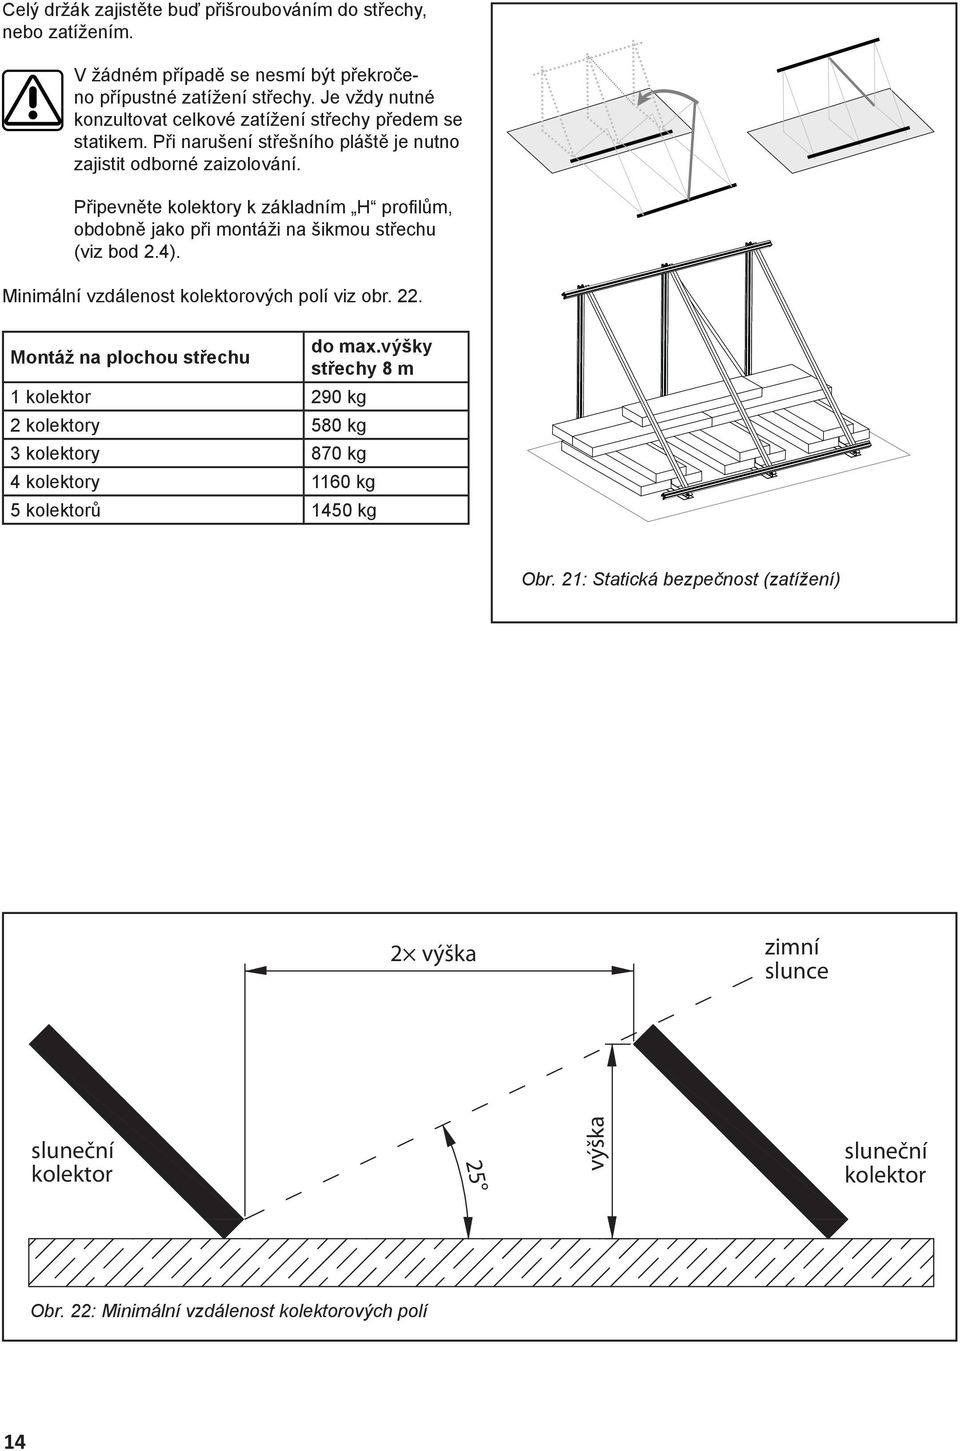 Připevněte kolektory k základním H profi lům, obdobně jako při montáži na šikmou střechu (viz bod 2.4). Minimální vzdálenost kolektorových polí viz obr. 22.